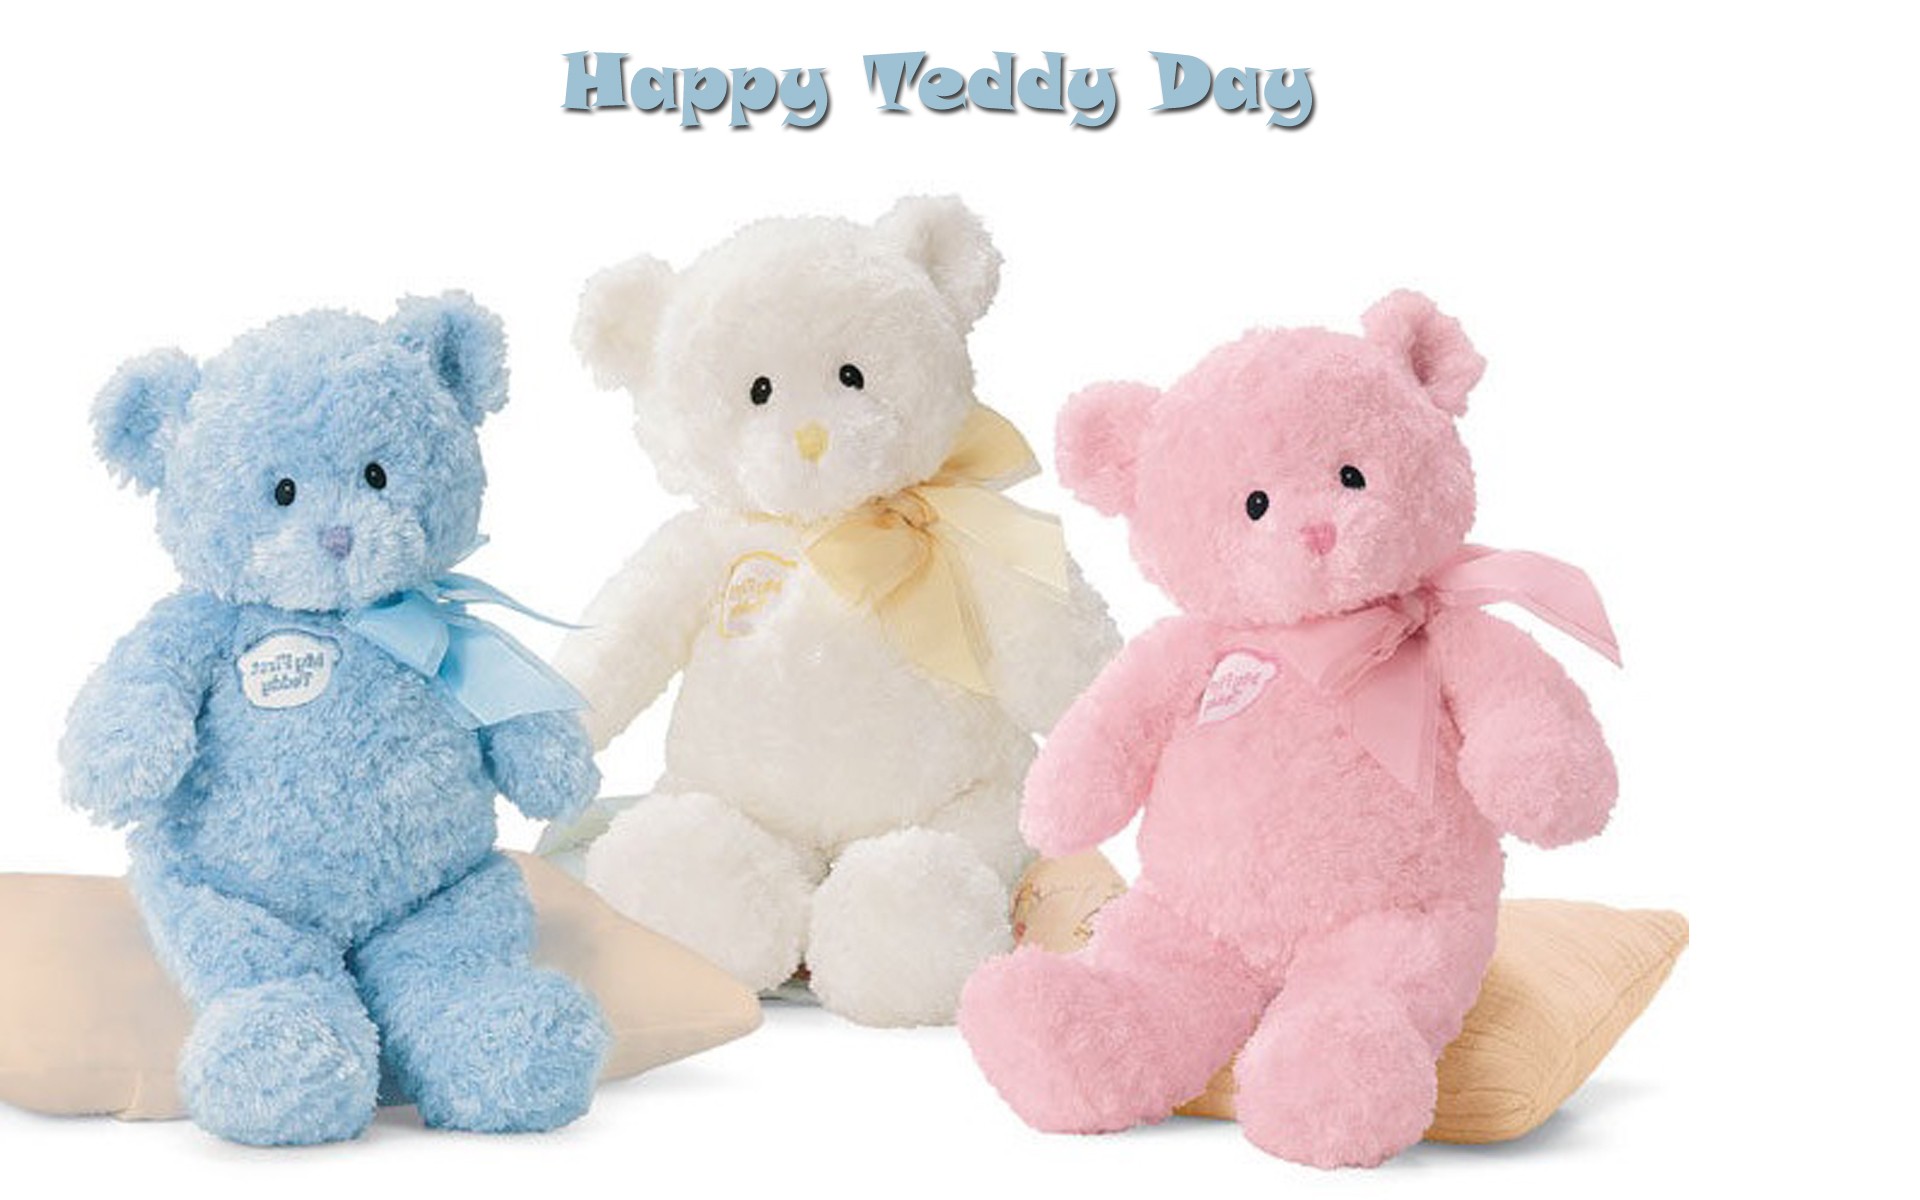 Happy teddy day three cute teddies